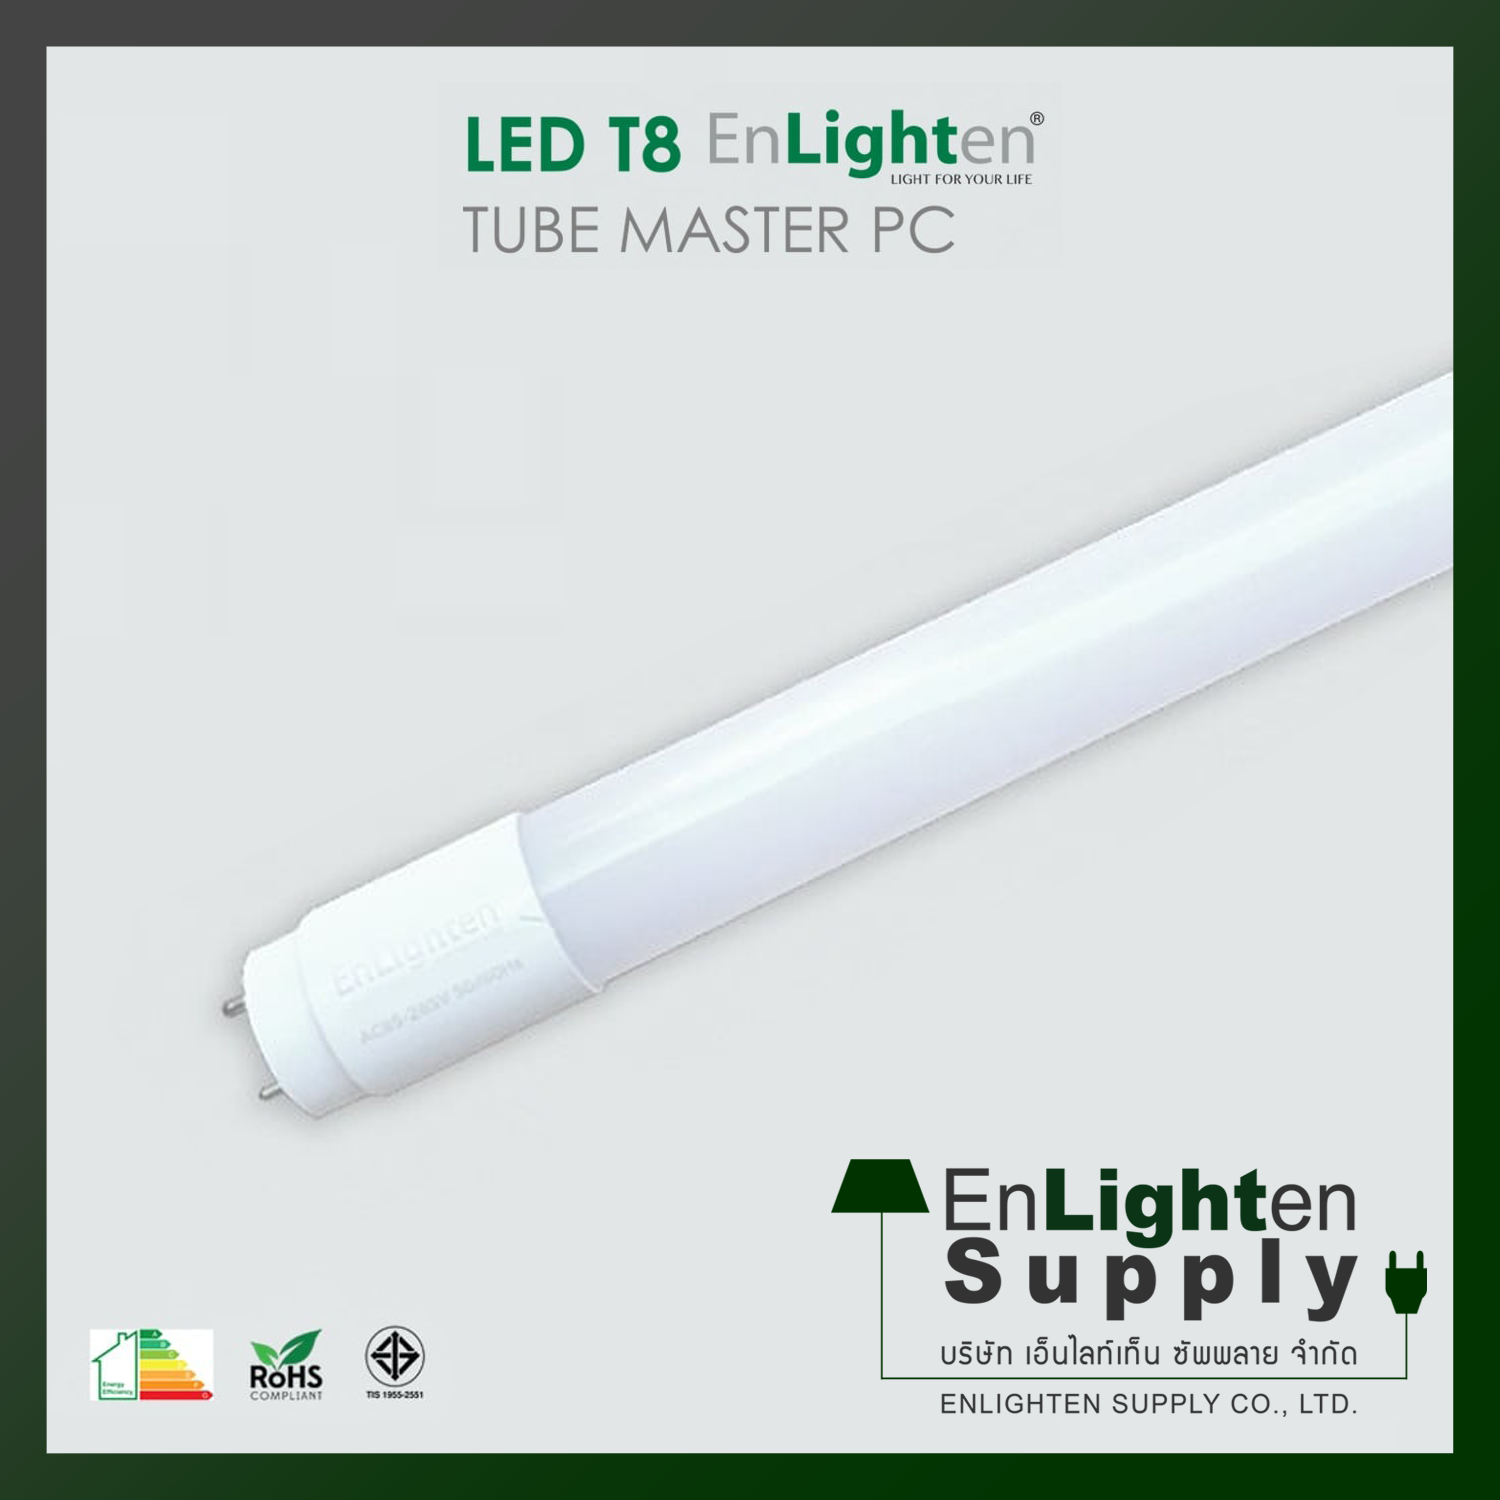 หลอดนีออน LED T8 14W Enlighten (DL) 120 CM